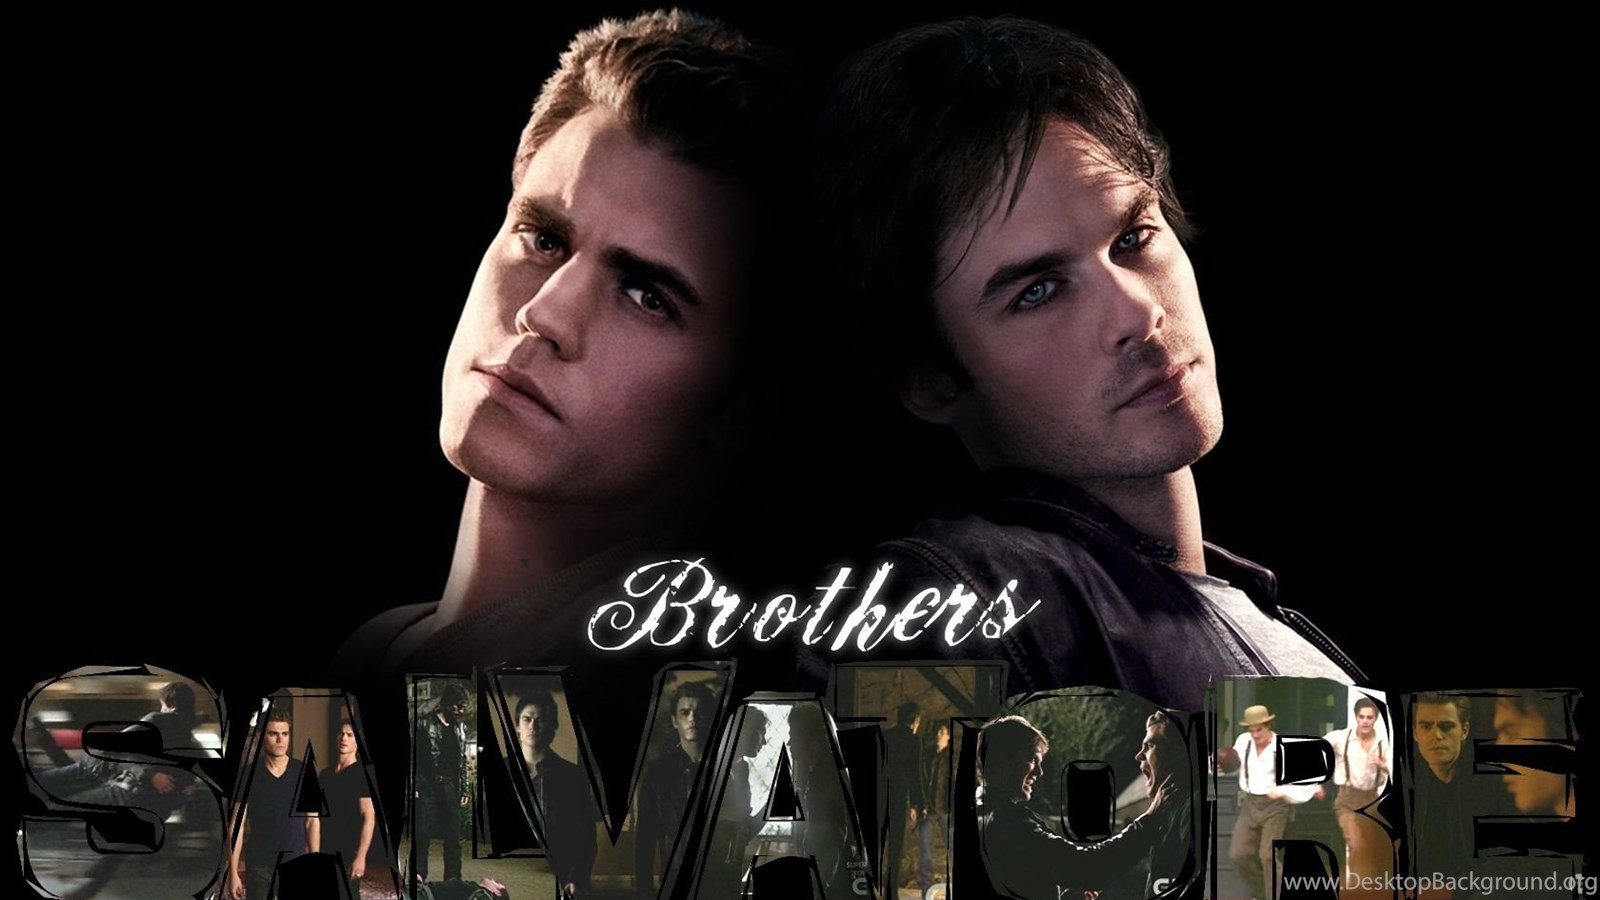 Stefan & Damon Damon And Stefan Salvatore Wallpaper 17122408. Desktop Background